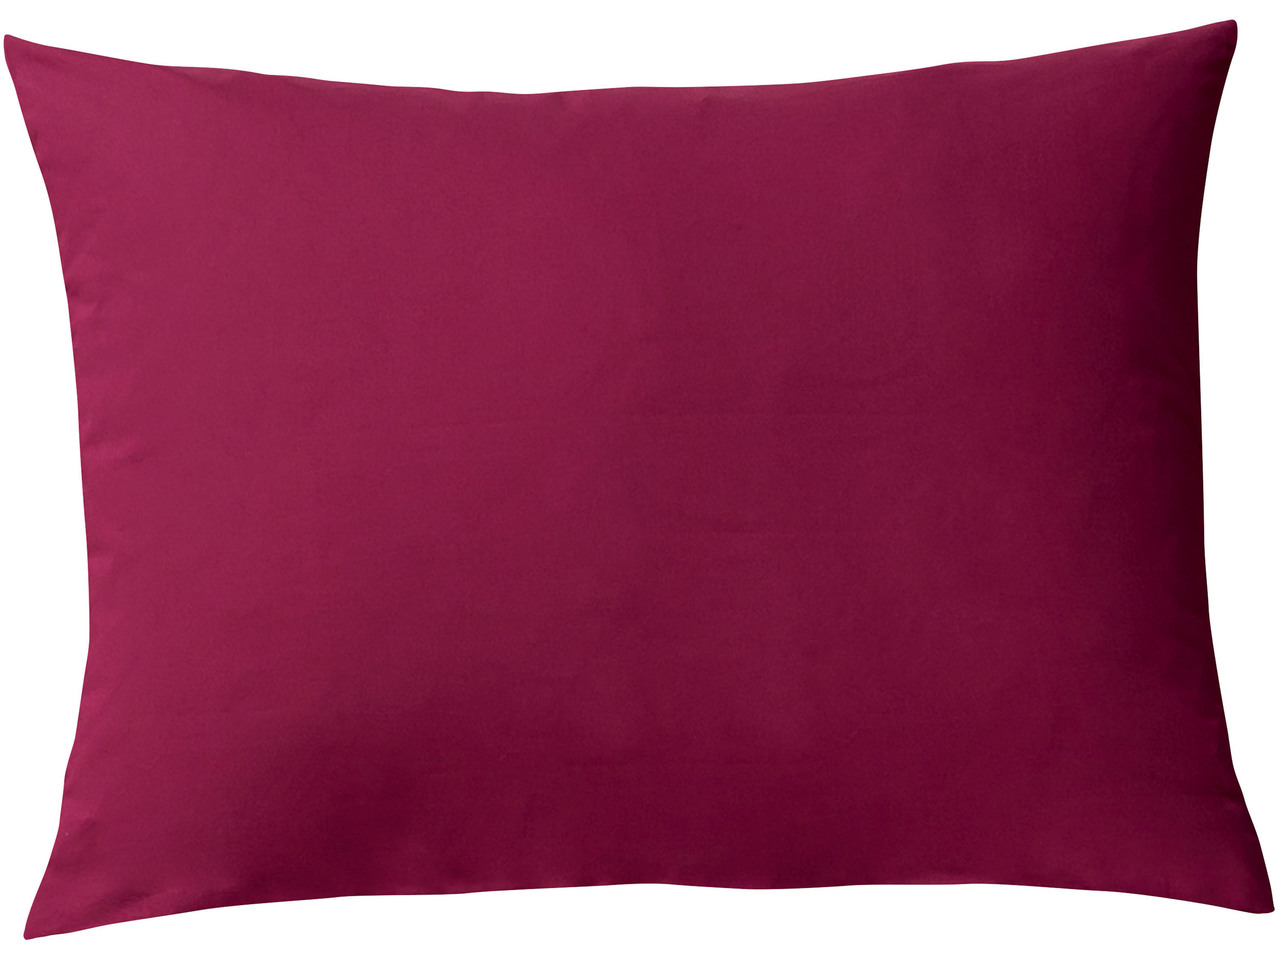 Pillowcase, 50x80cm